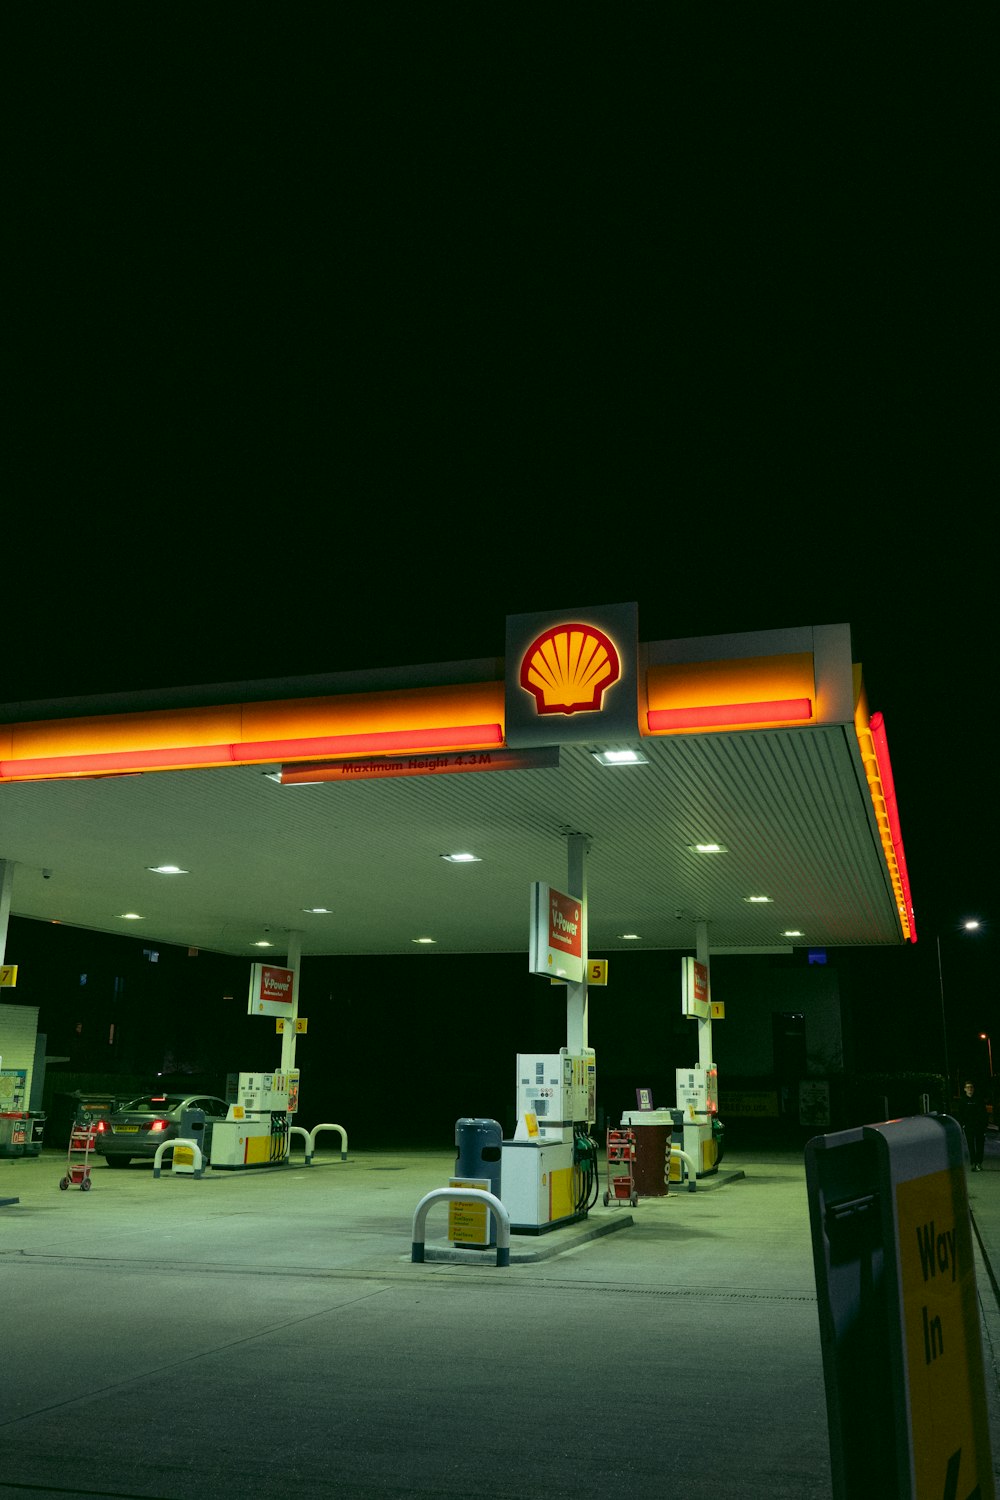 Eine Shell-Tankstelle in der Nacht mit einem beleuchteten Schild